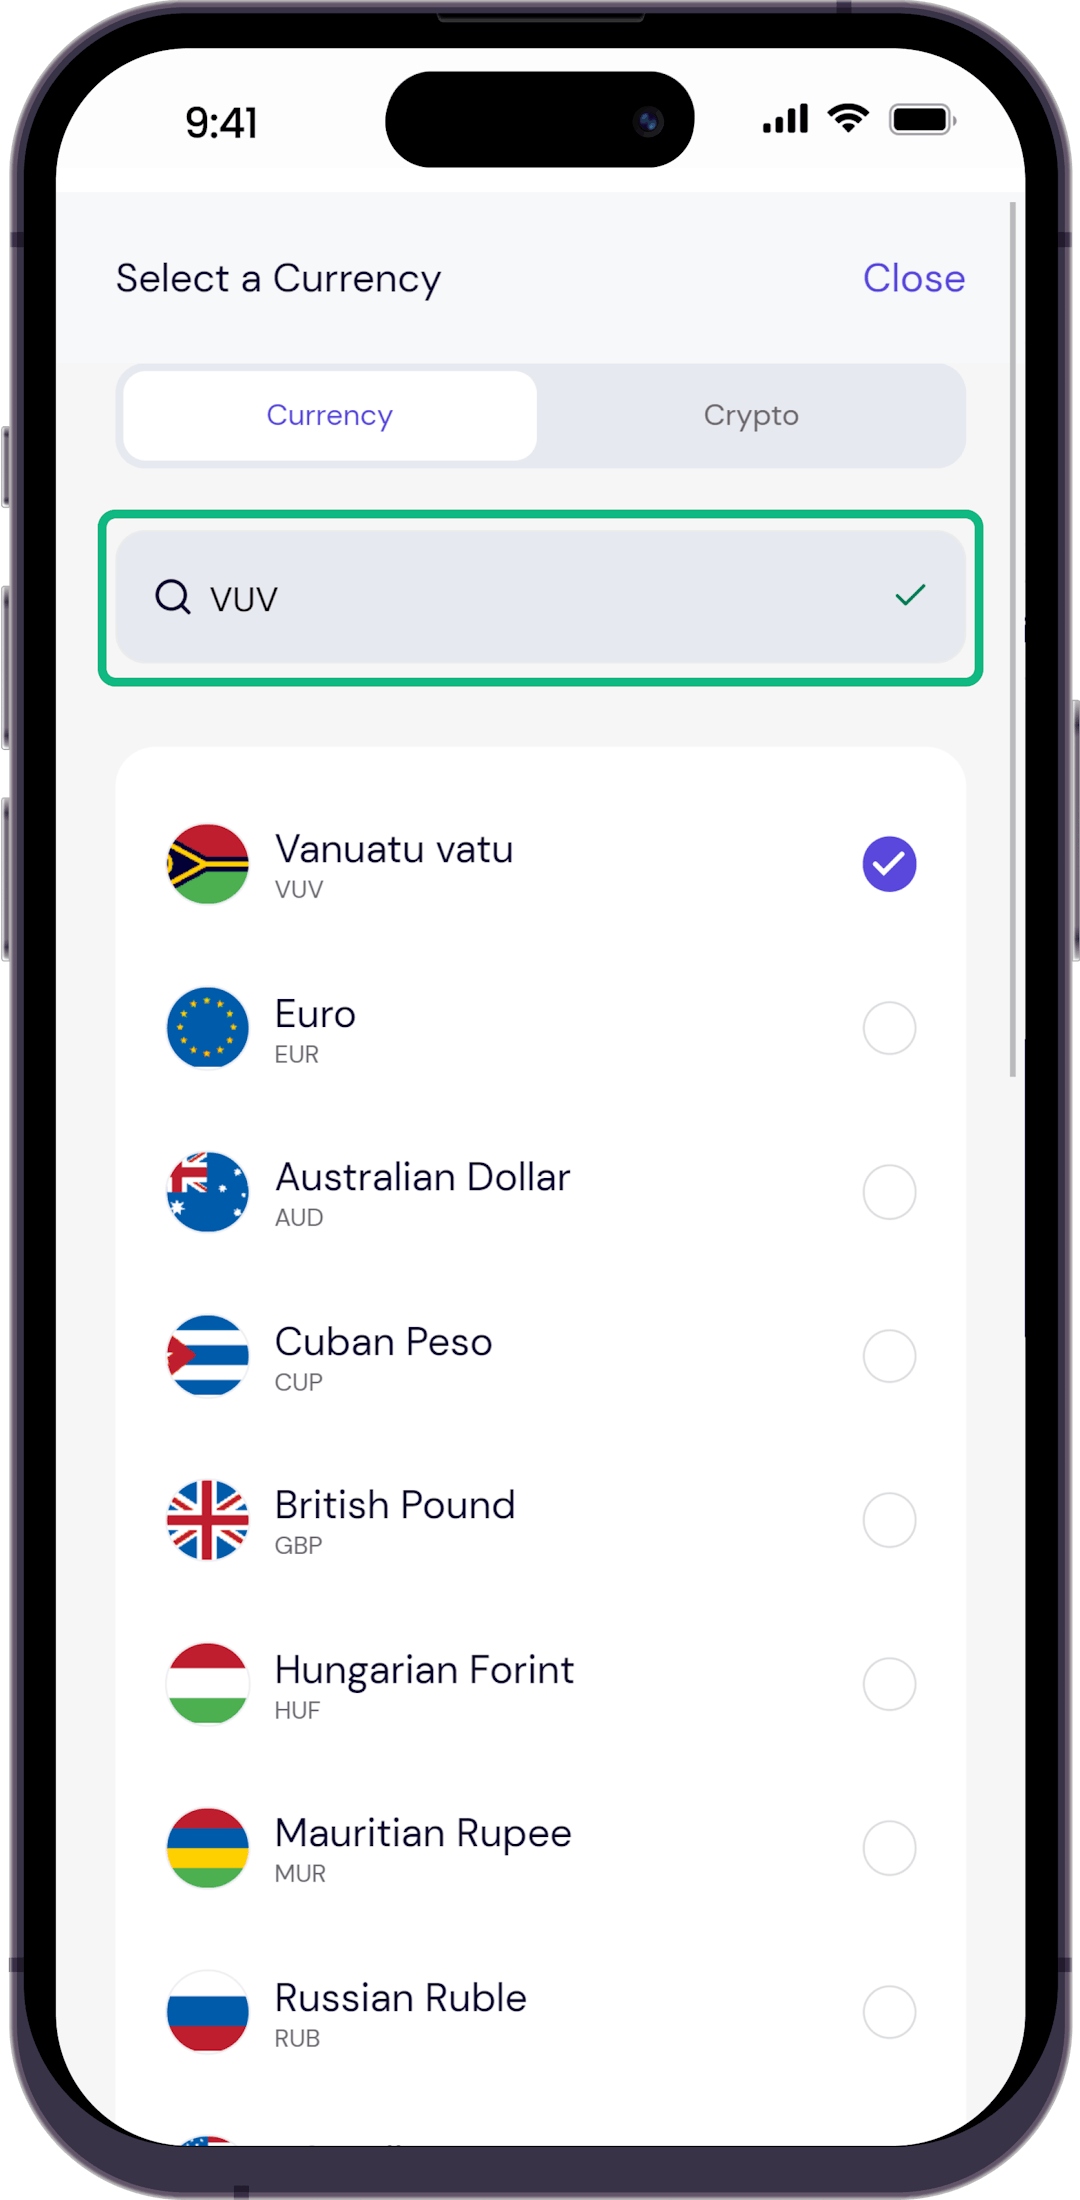 Step 3 - Search for Vanuatu Vatu currency